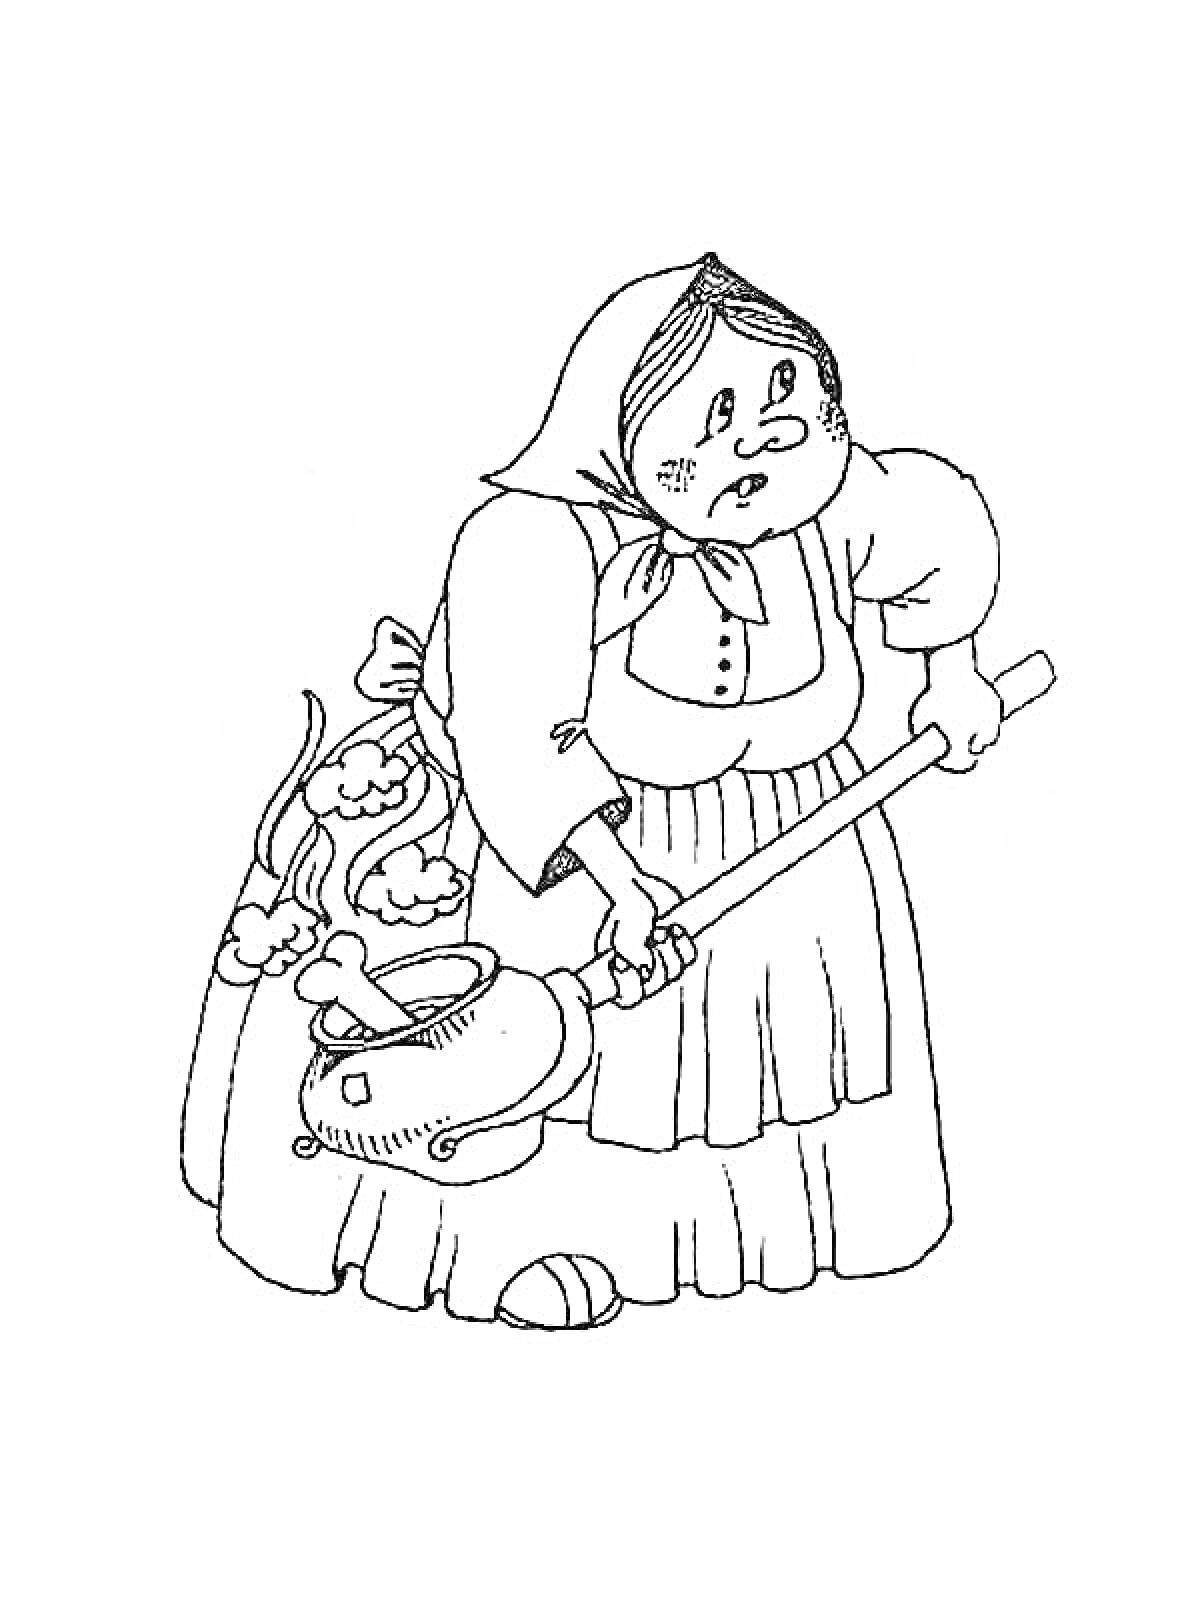 РаскраскаСтарушка с половником и убегающей посудой из сказки 